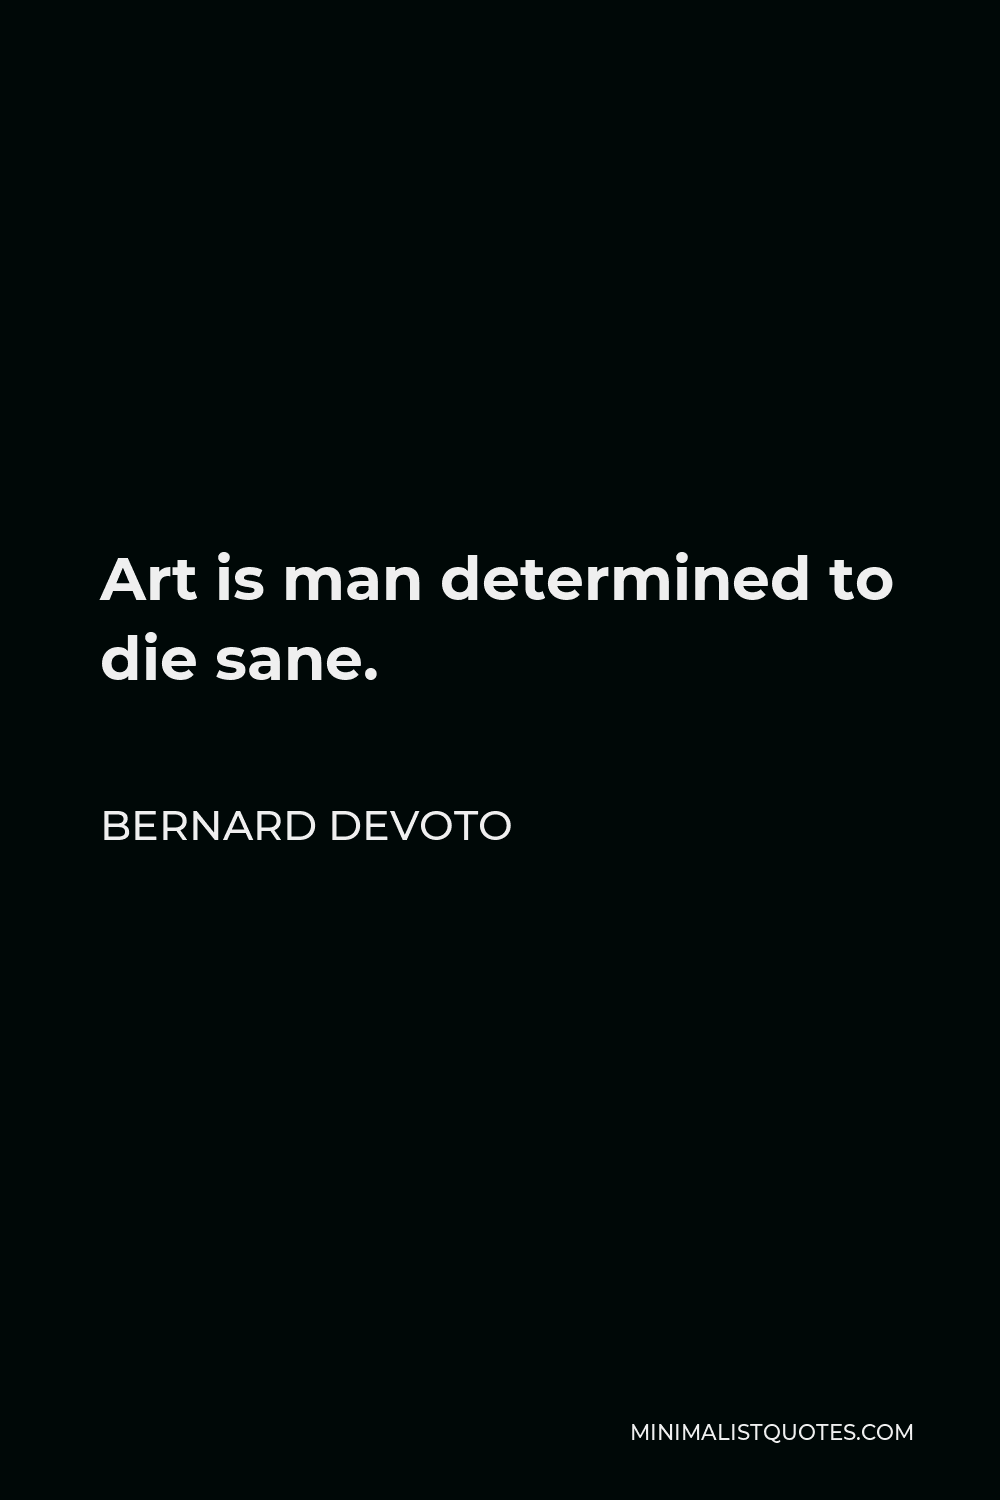 Bernard DeVoto Quote - Art is man determined to die sane.